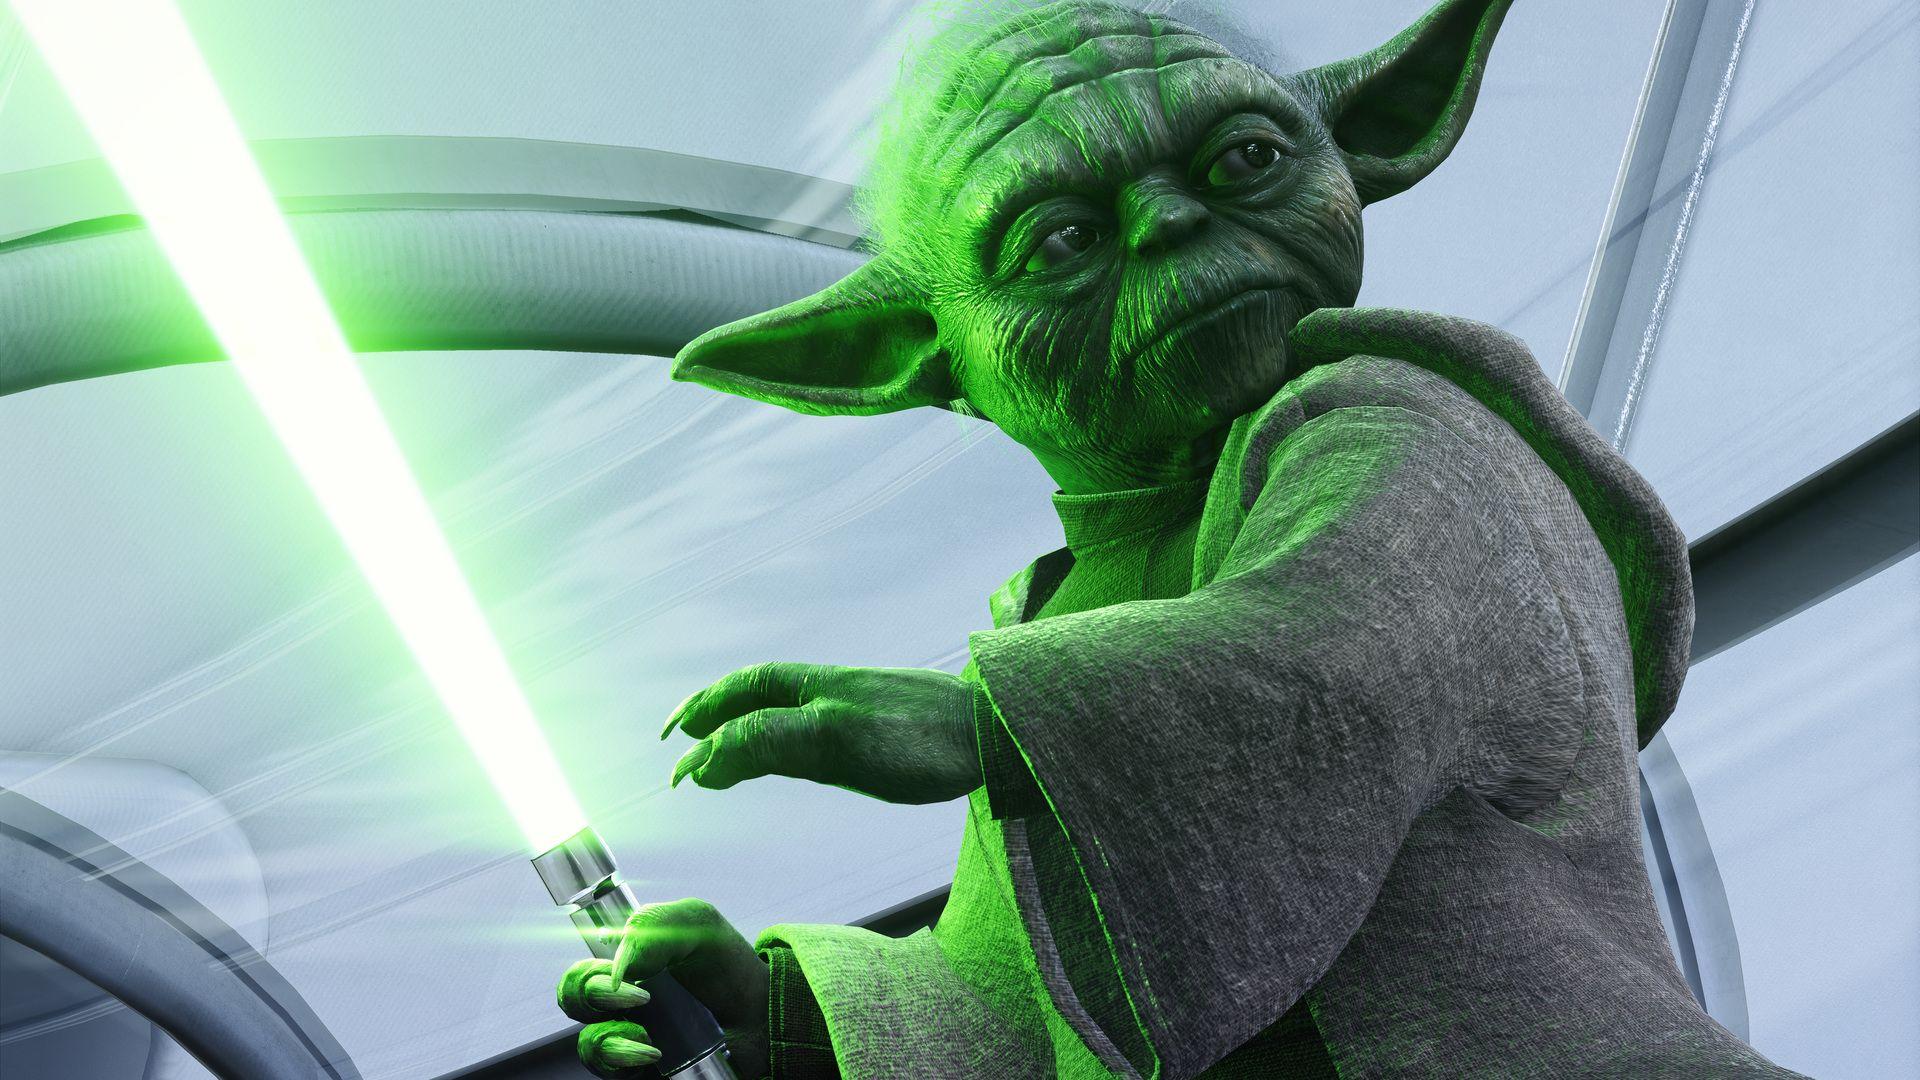 Yoda Star Wars Battlefront II 5k Laptop Full HD 1080P HD